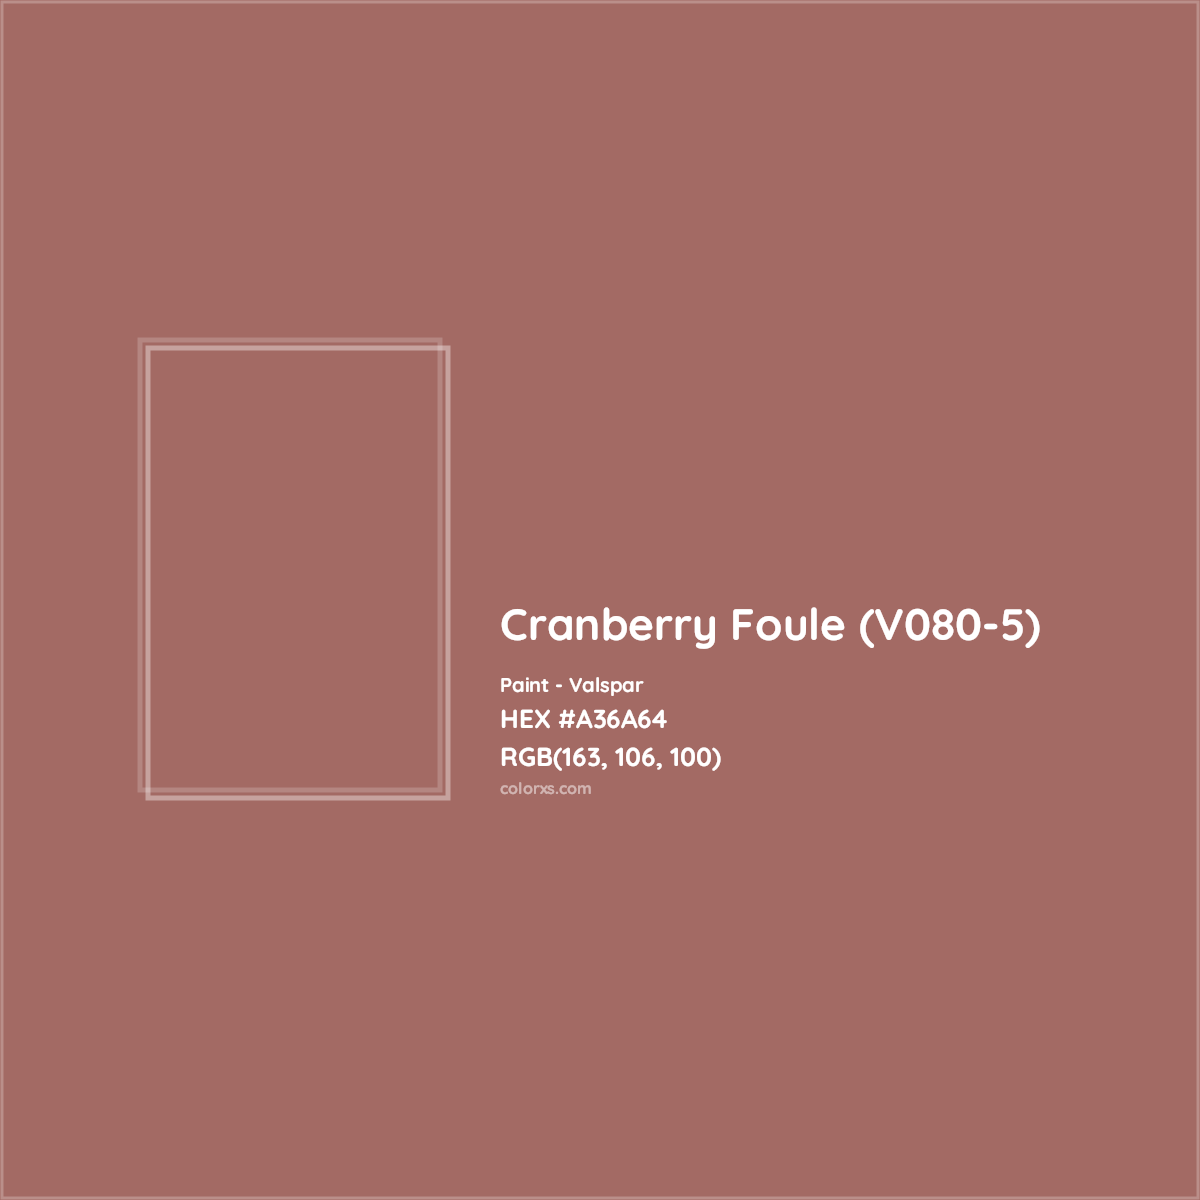 HEX #A36A64 Cranberry Foule (V080-5) Paint Valspar - Color Code